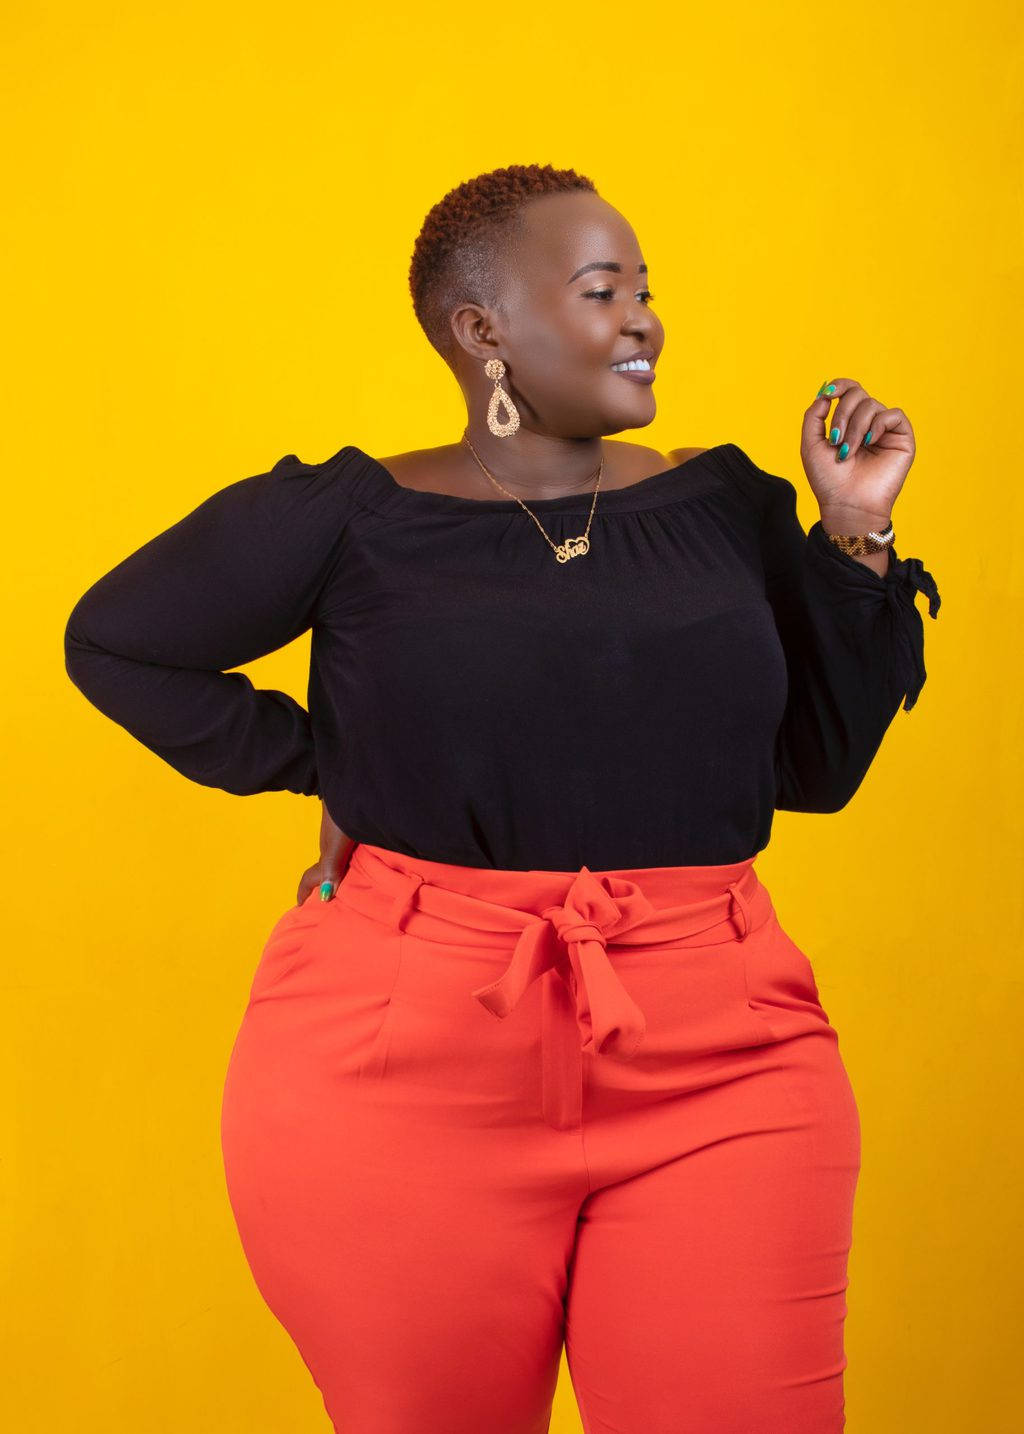 Fashionable Fat Black Woman Wallpaper